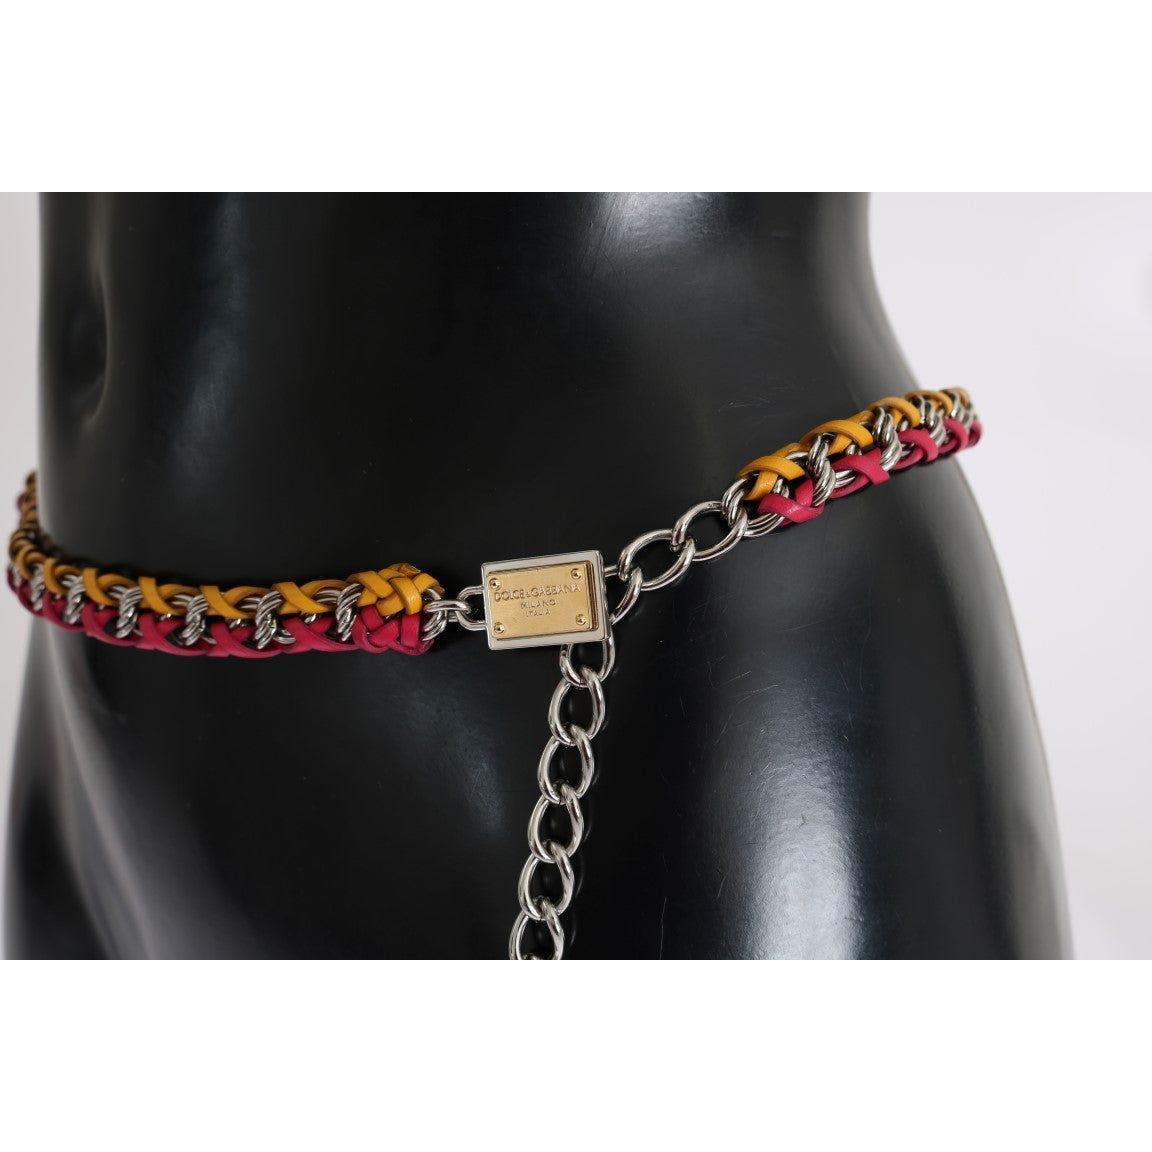 Dolce & Gabbana Elegant Multicolor Crystal-Embellished Belt Belt red-yellow-leather-crystal-belt 473811-red-yellow-leather-crystal-belt-3.jpg